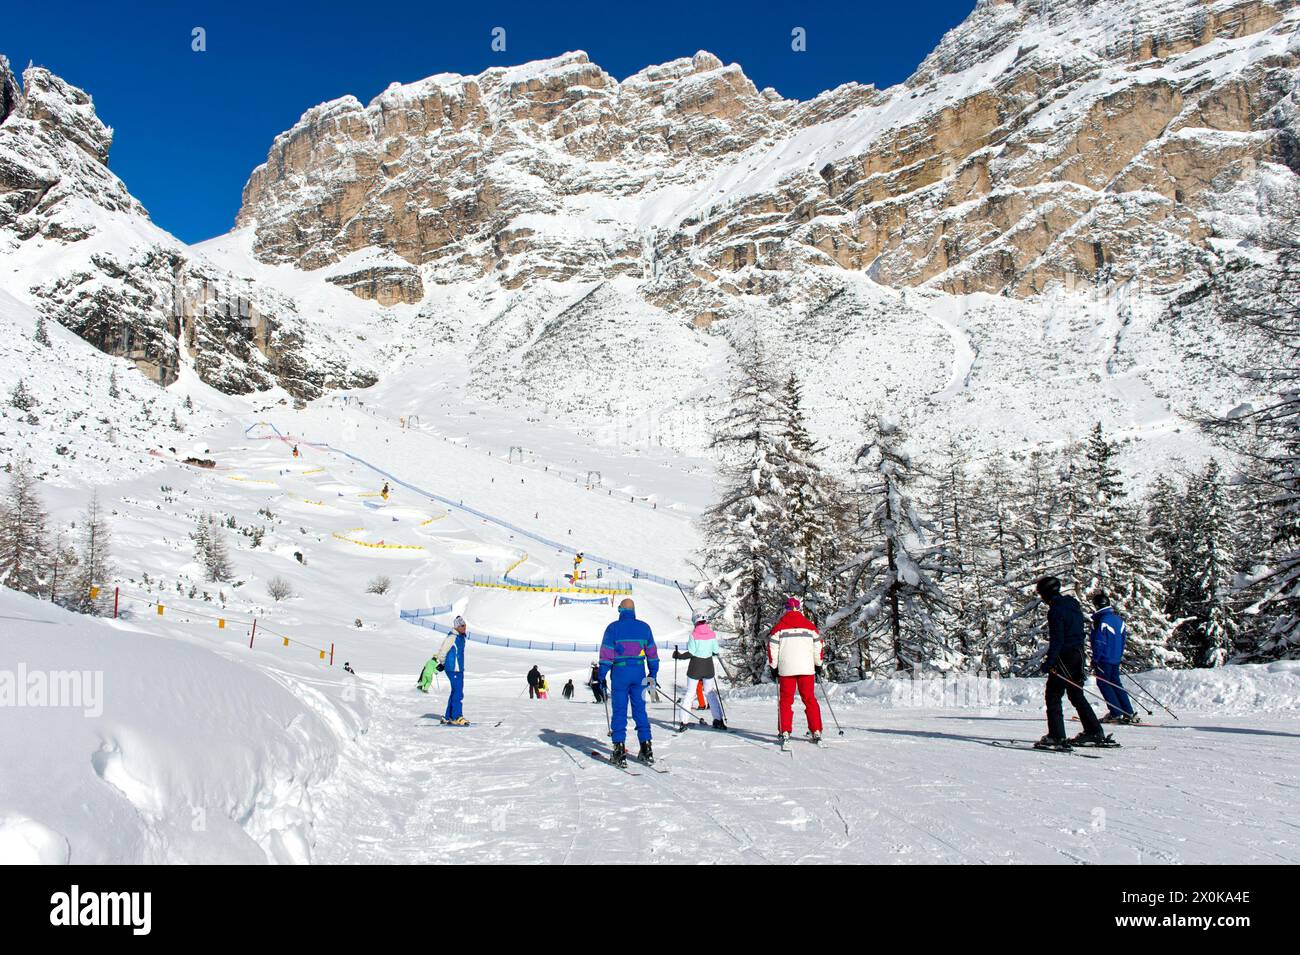 Sciatori in viaggio verso il Colfosco Edelweiss Snowpark, Colfosco, Colfosco, comprensorio sciistico dell'alta Badia, Dolomiti, alto Adige, Italia Foto Stock